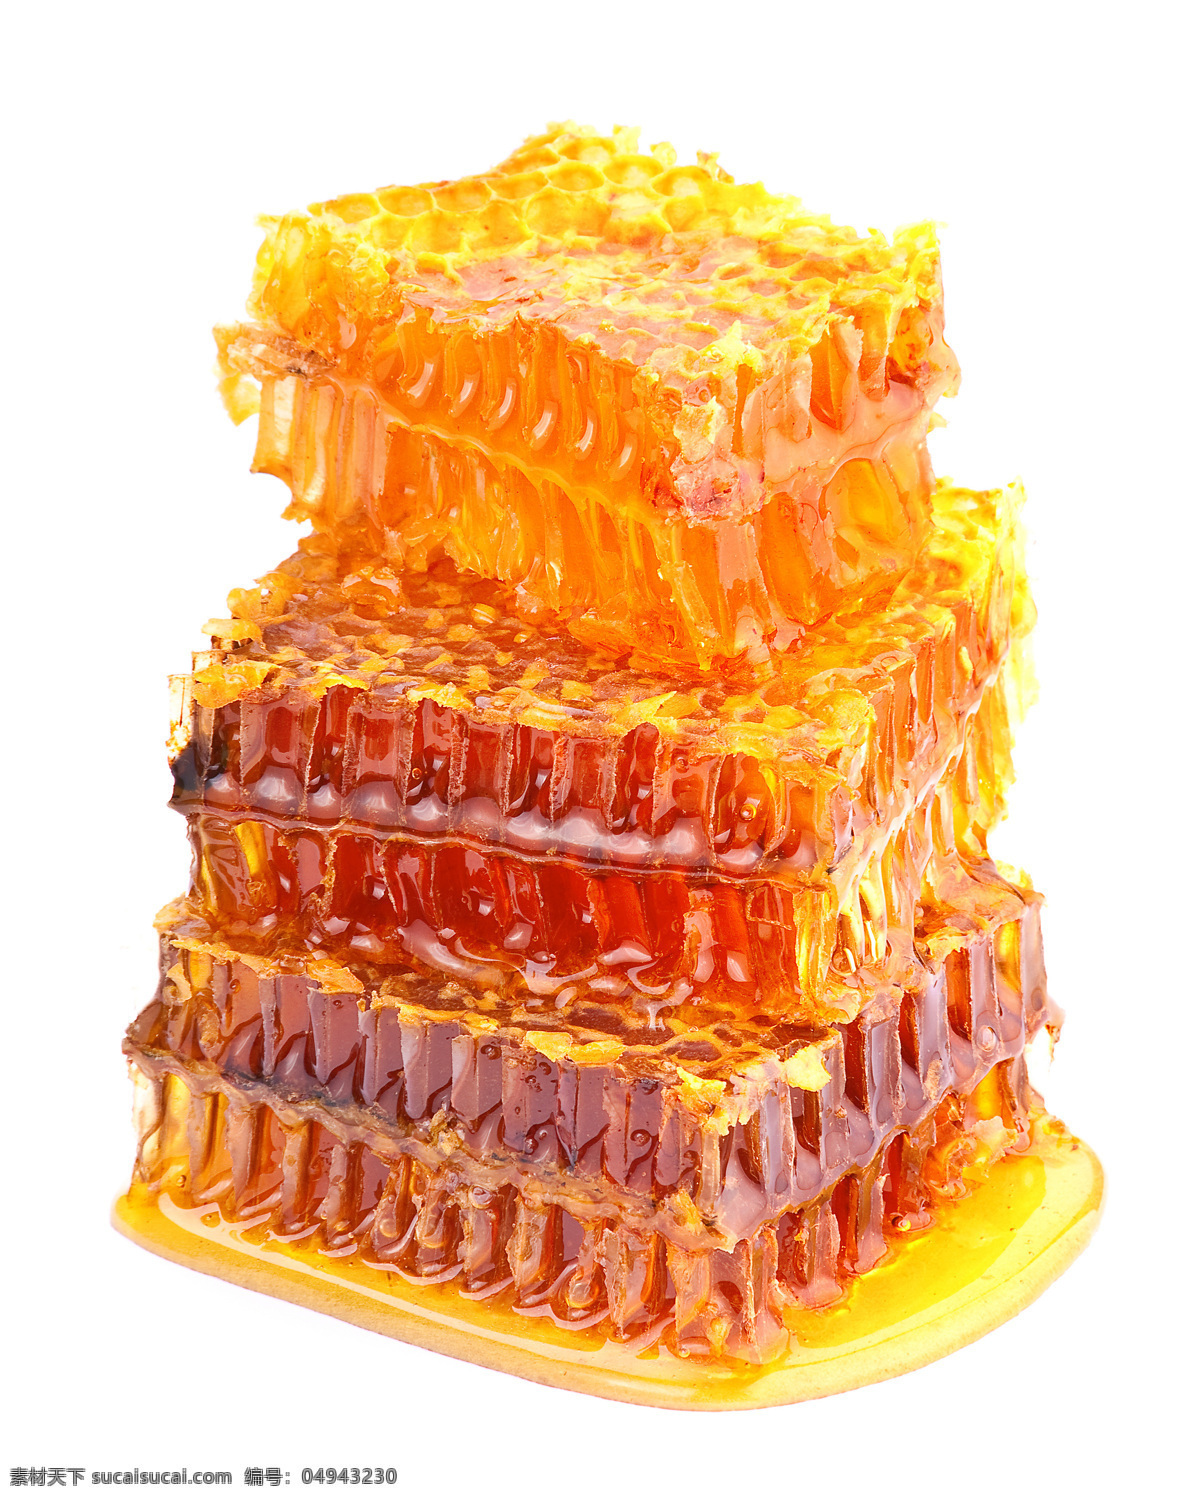 蜜糖图片素材 蜂蜜 蜜糖 蜂巢 蜂窝 蜜糖罐 美食图片 餐饮美食